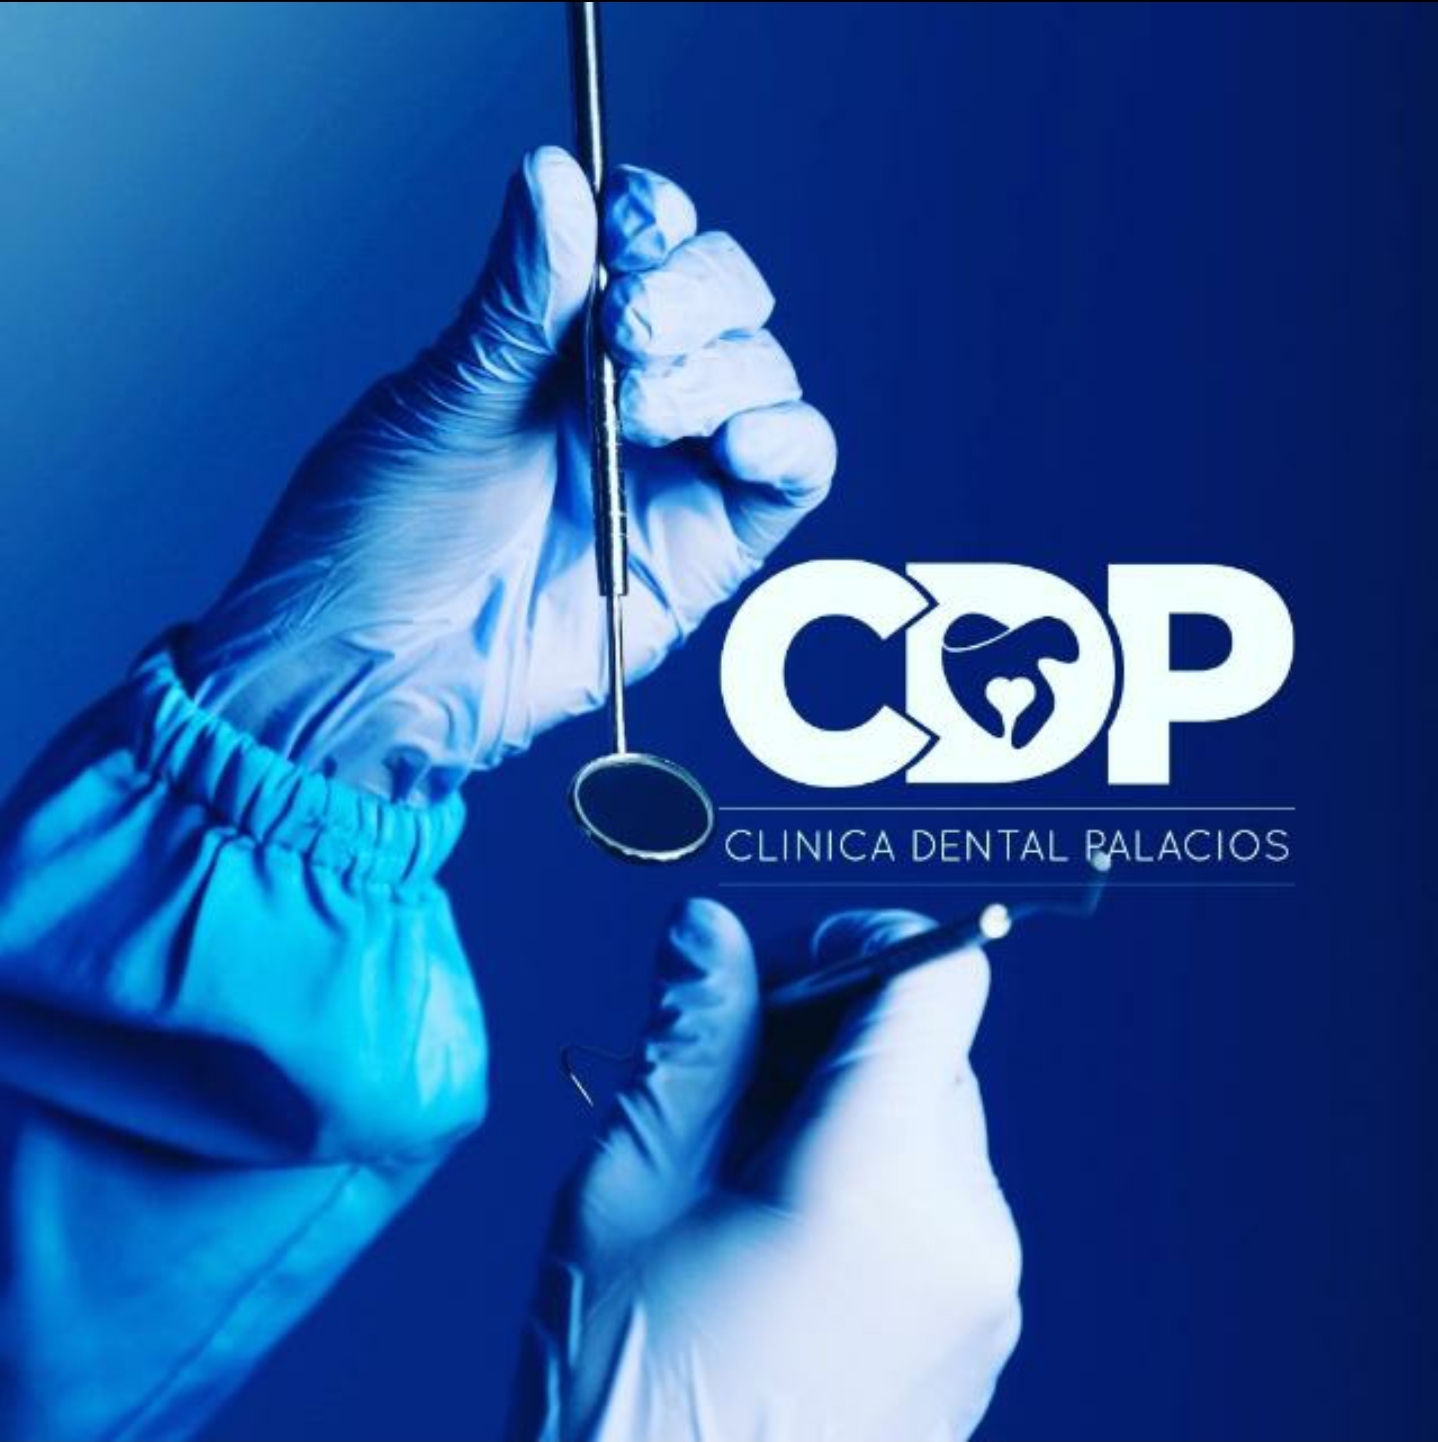 CDP Clinica Dental Palacios